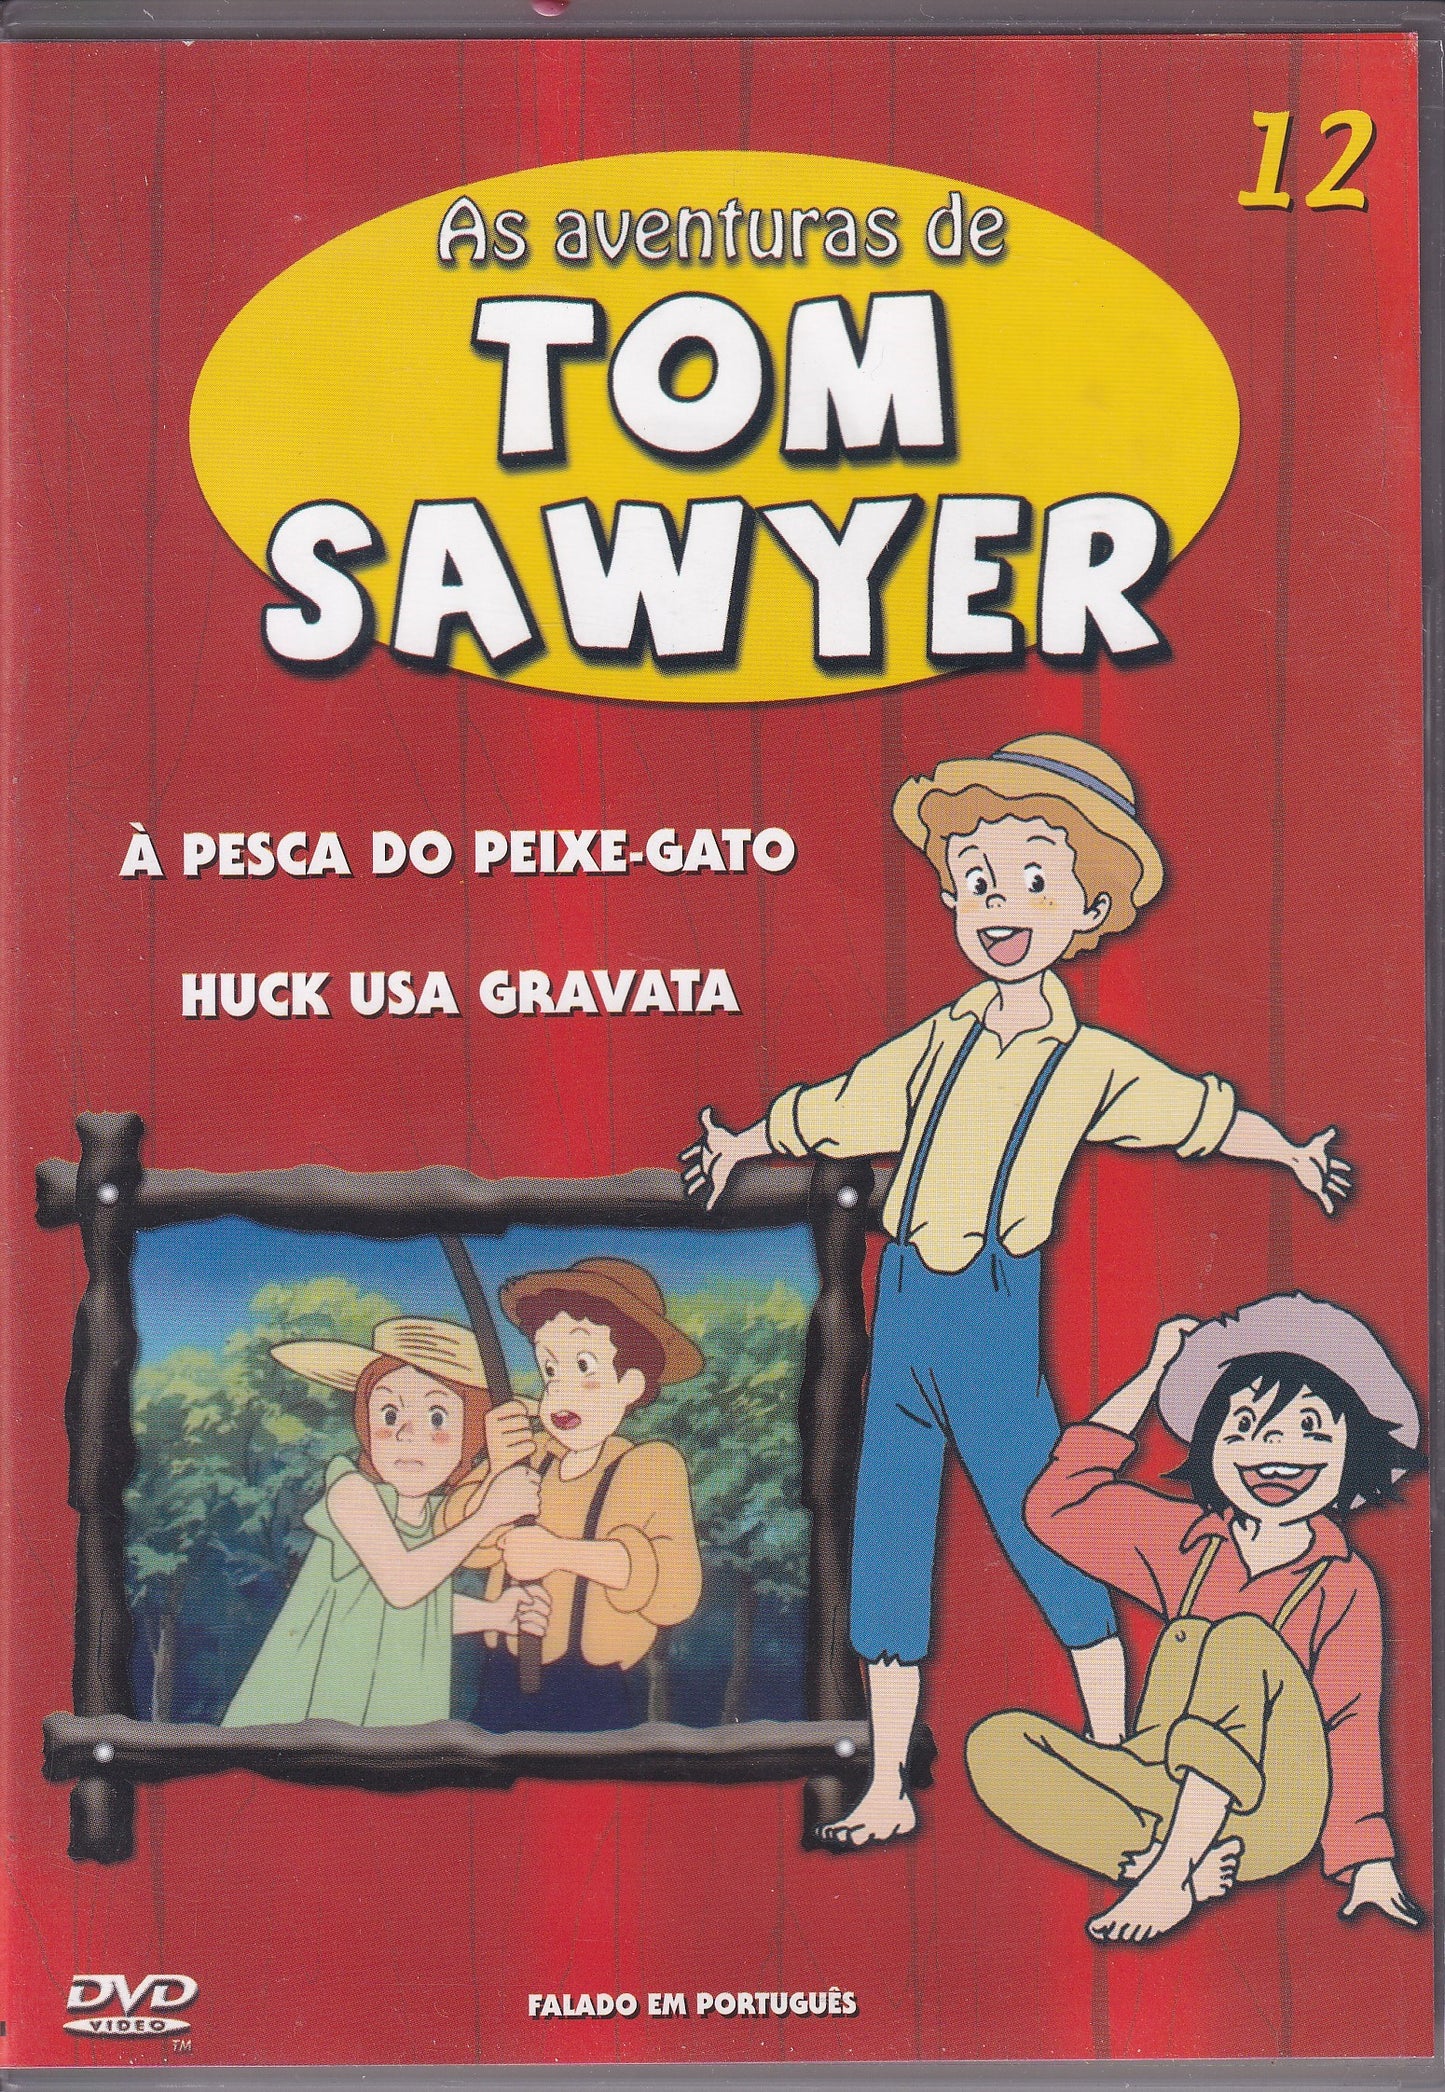 DVD AS AVENTURAS DE TOM SAWYER #12 - À PESCA DO PEIXE-GATO - HUCK USA GRAVATA - USADO